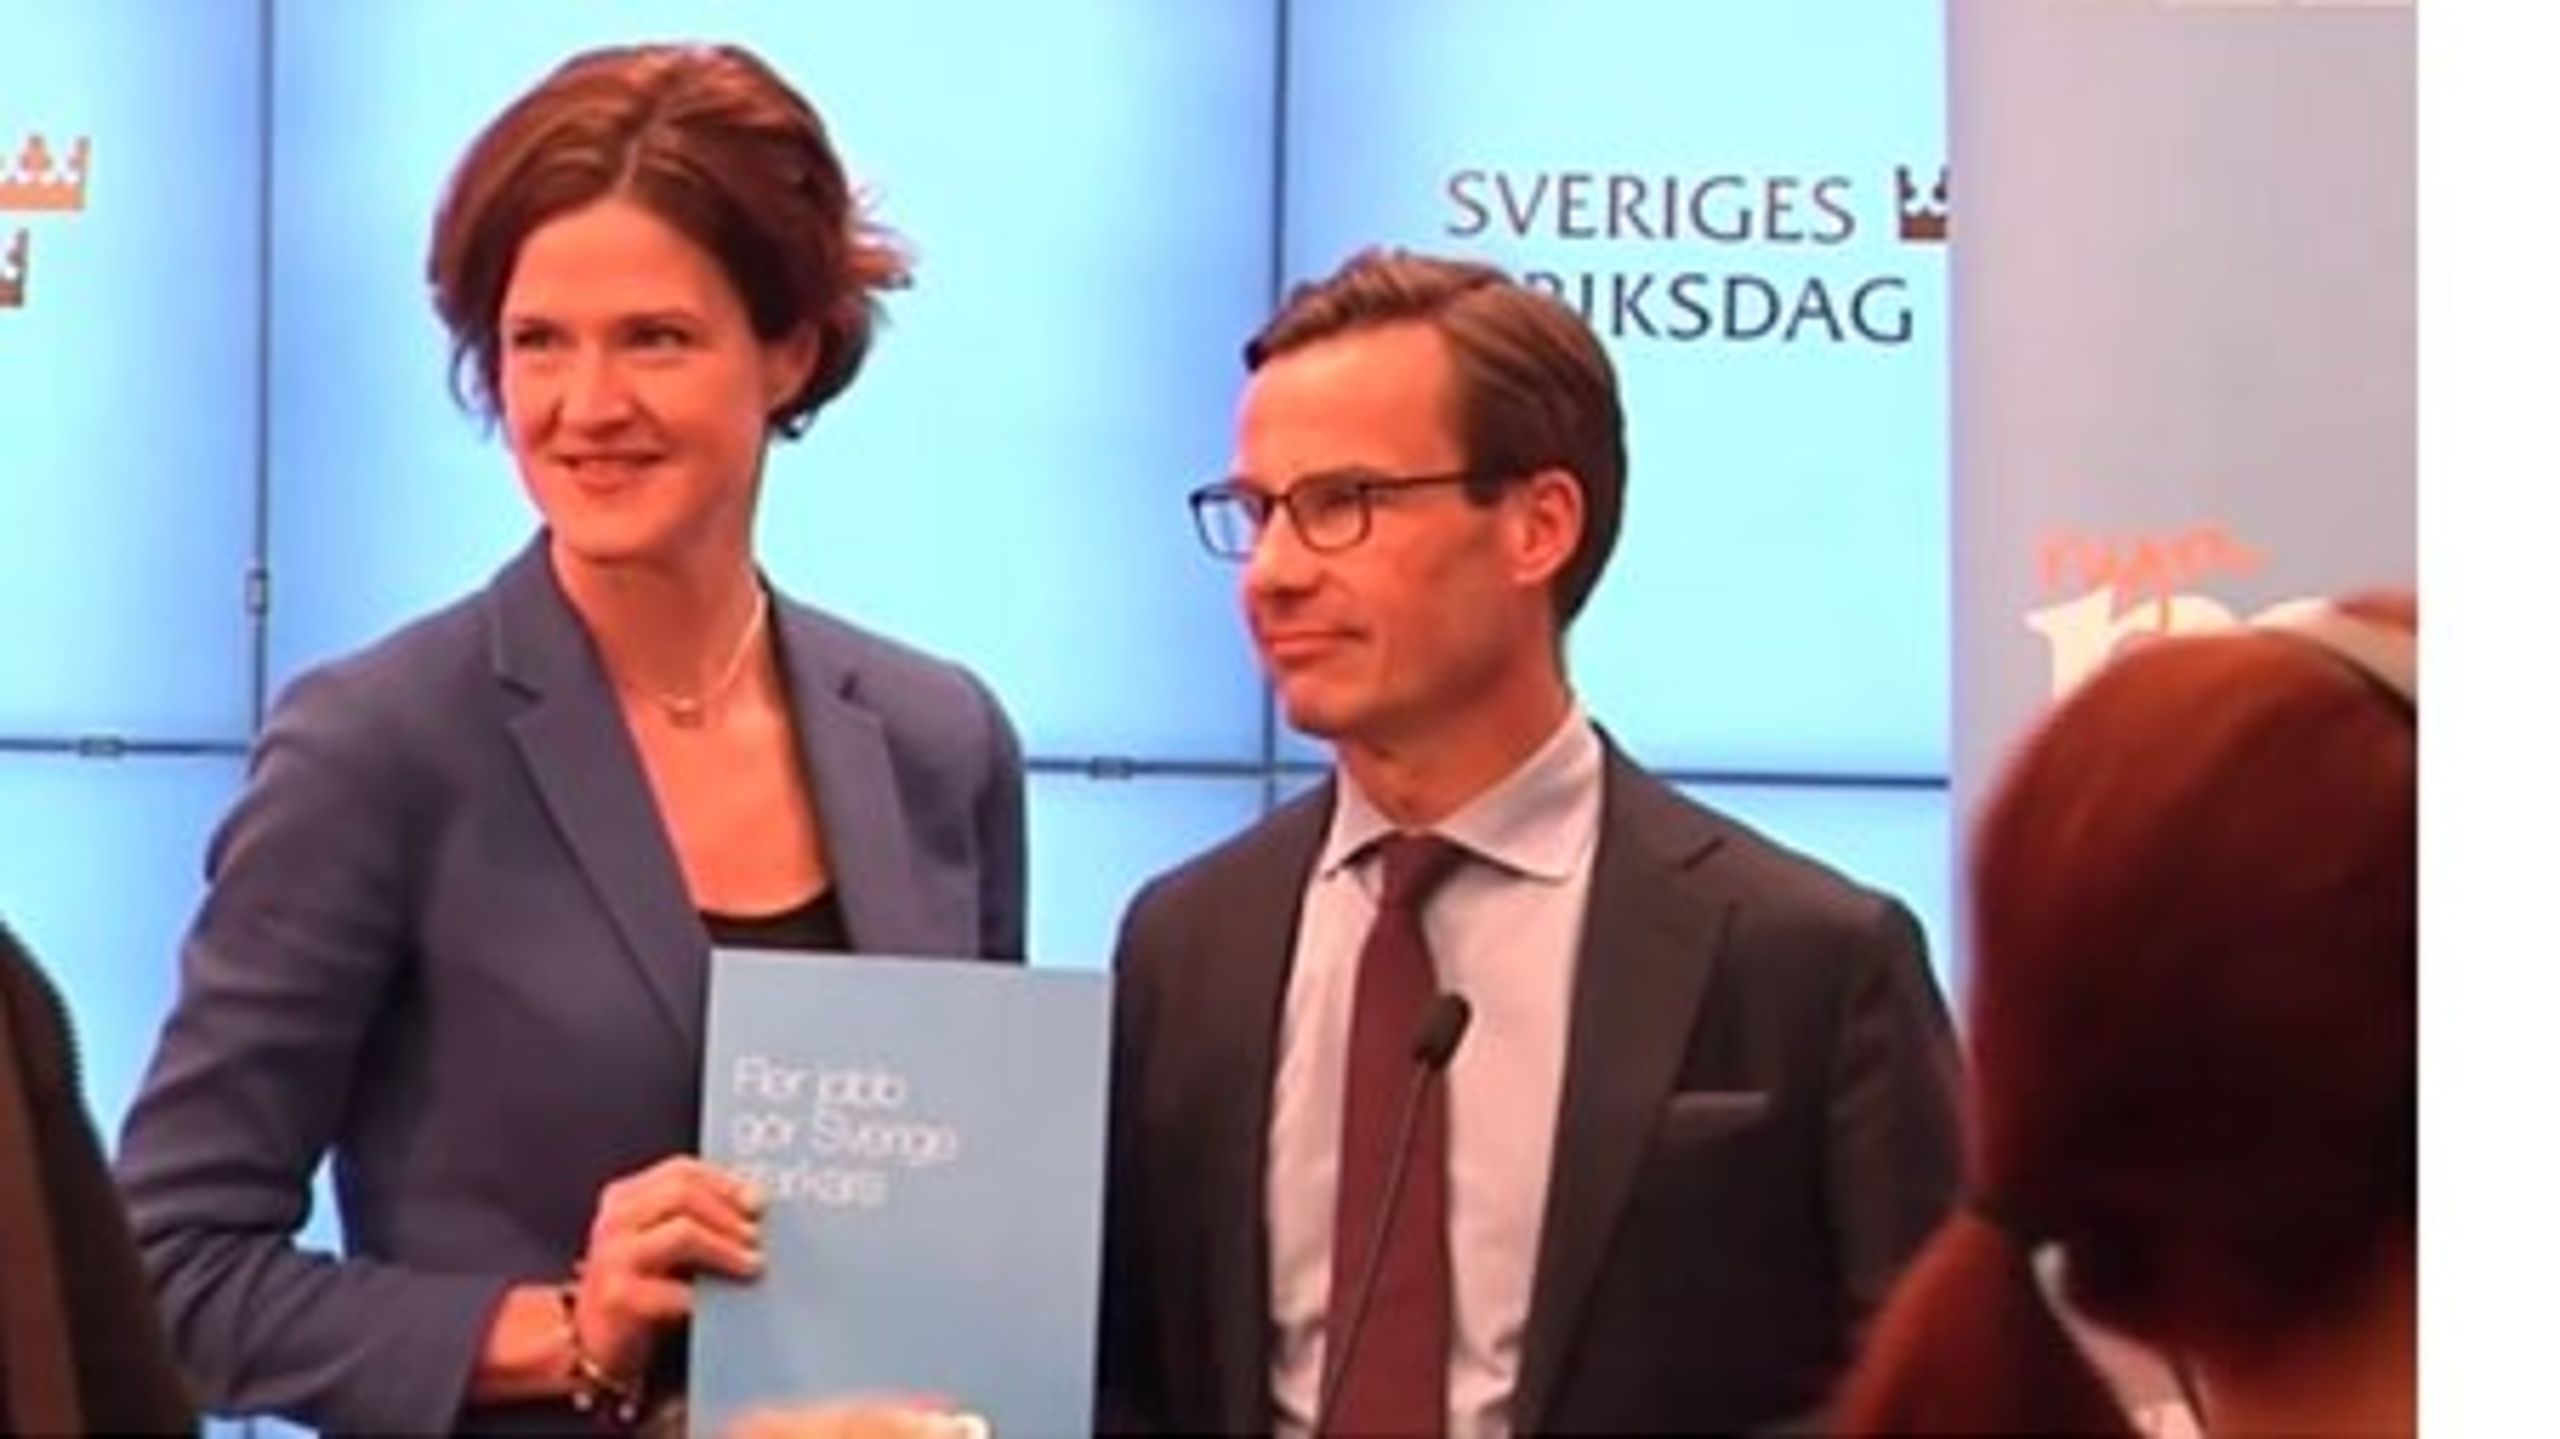 Moderaternas partiledare Anna Kinberg Batra och ekonomiskpolitiska talesperson Ulf Kristersson presenterar partiets vårbudget.&nbsp;